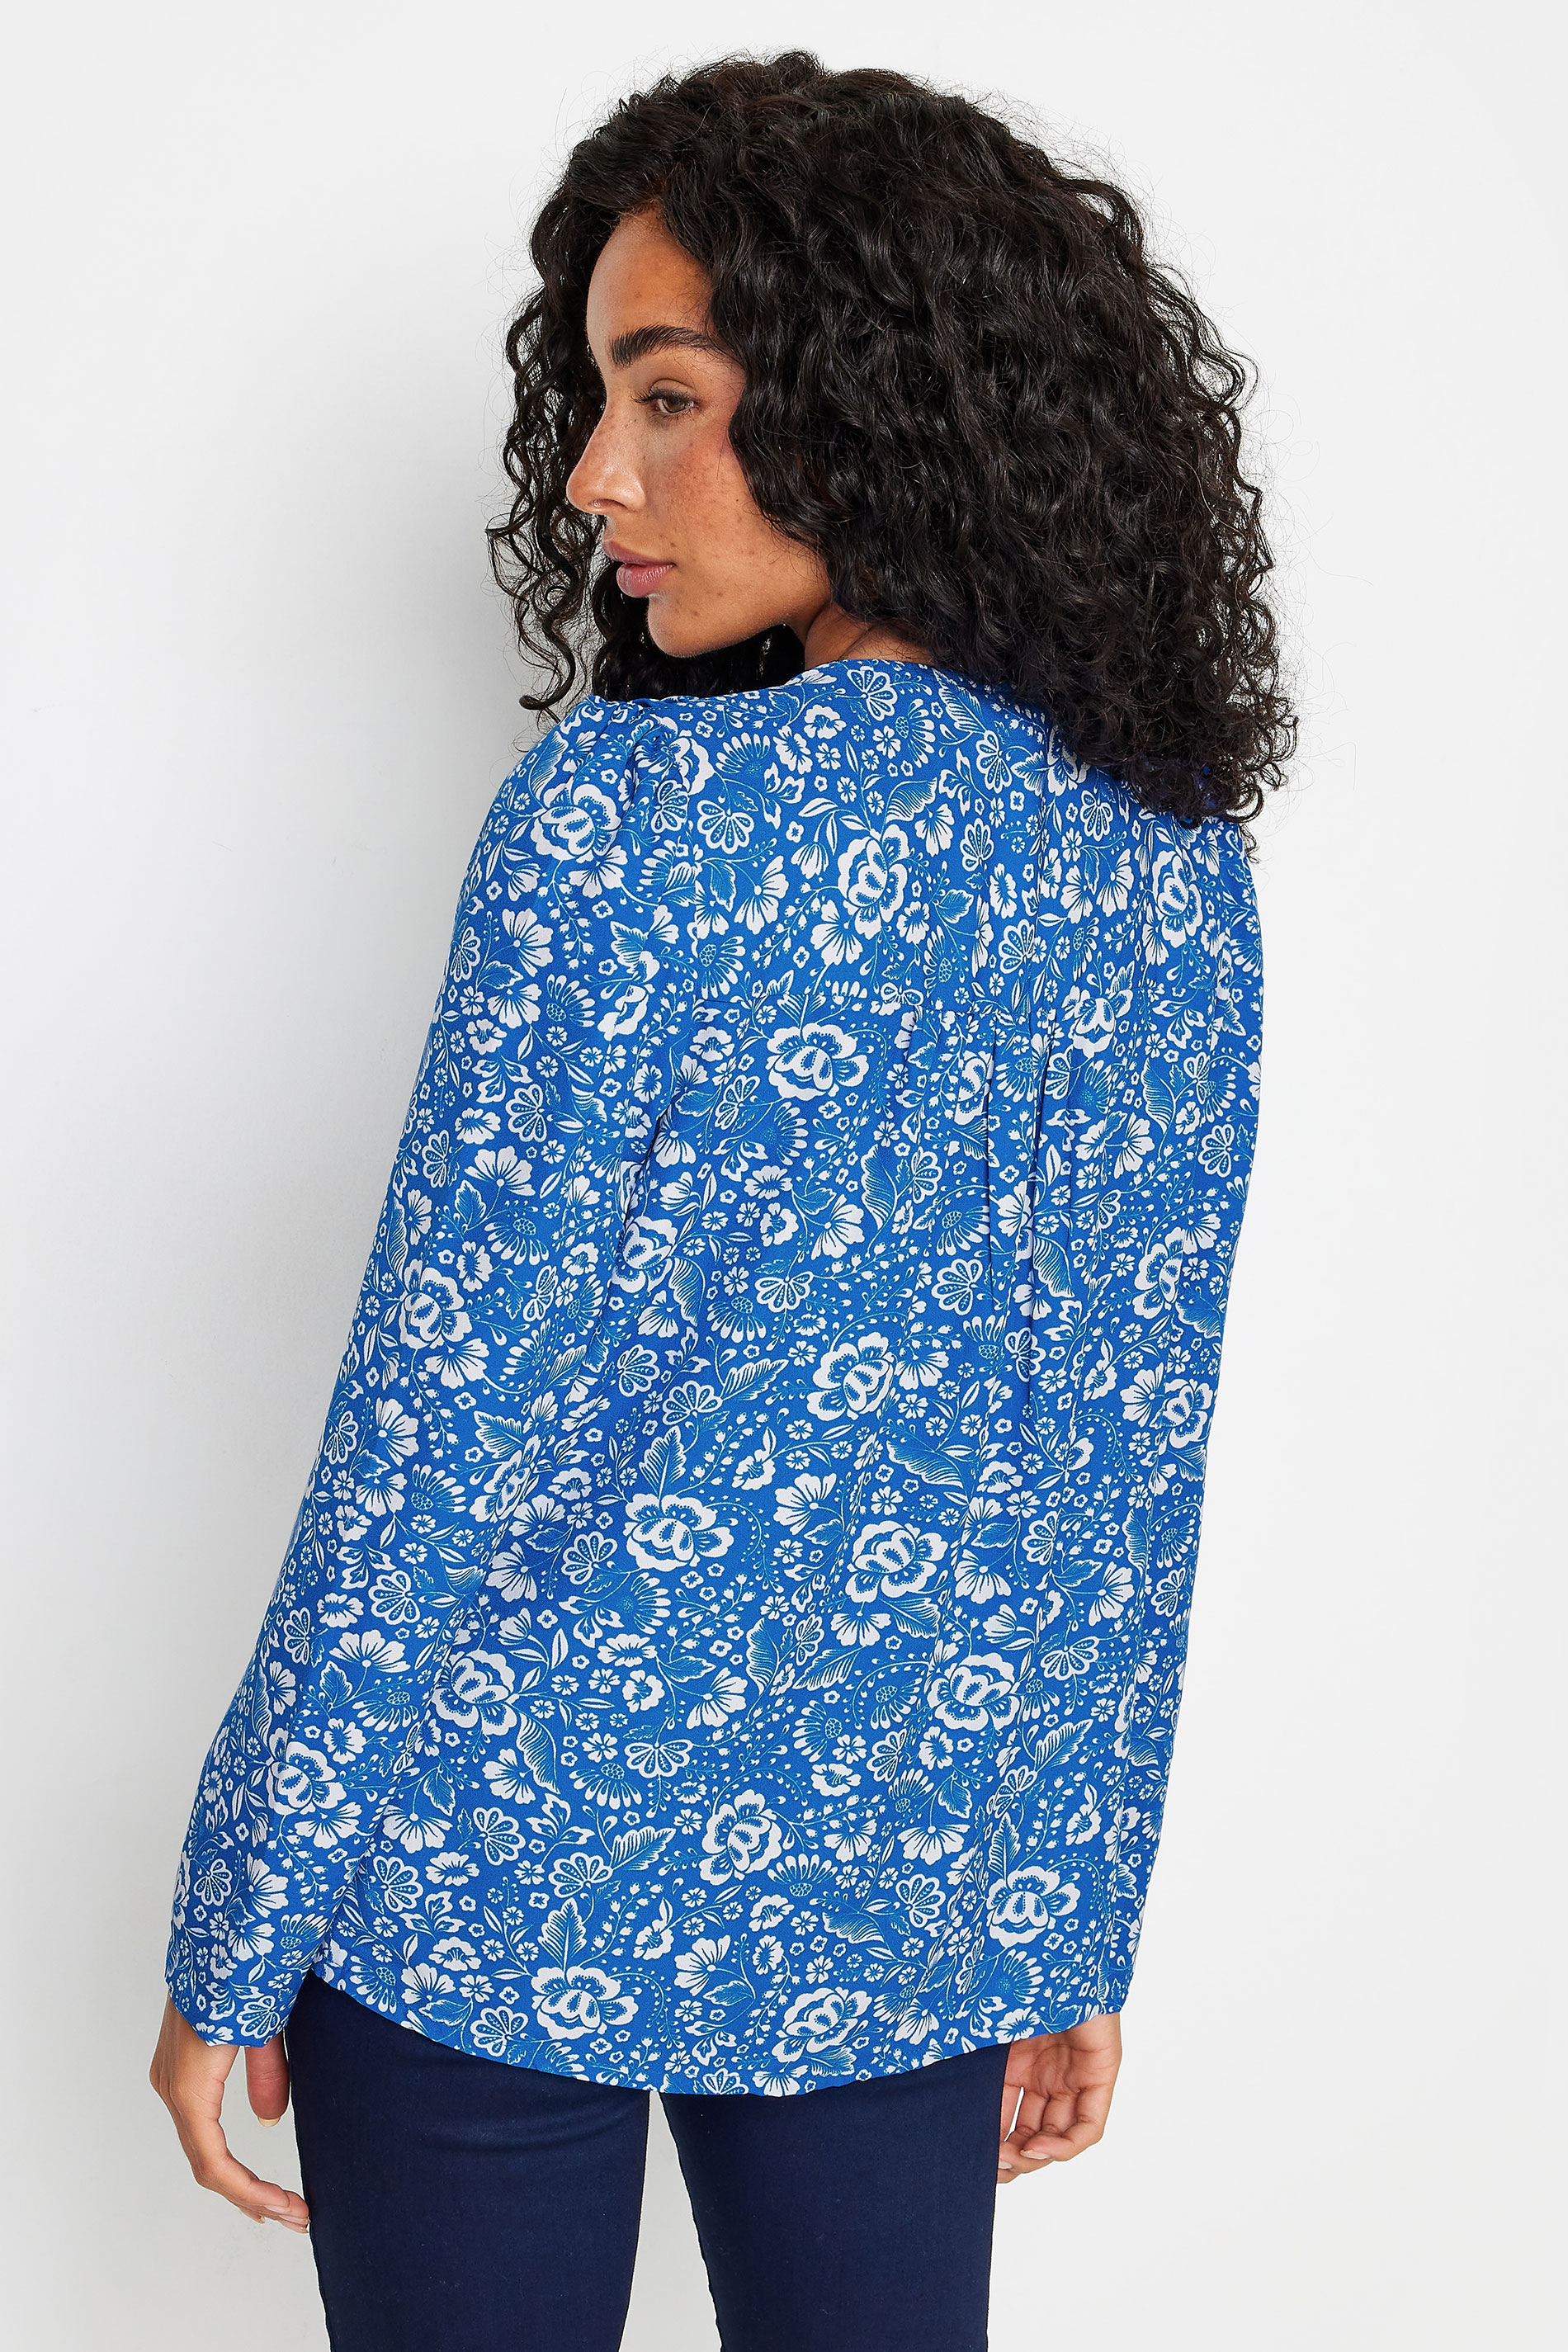 M&Co Petite Blue Floral Print Long Sleeve Blouse | M&Co 3